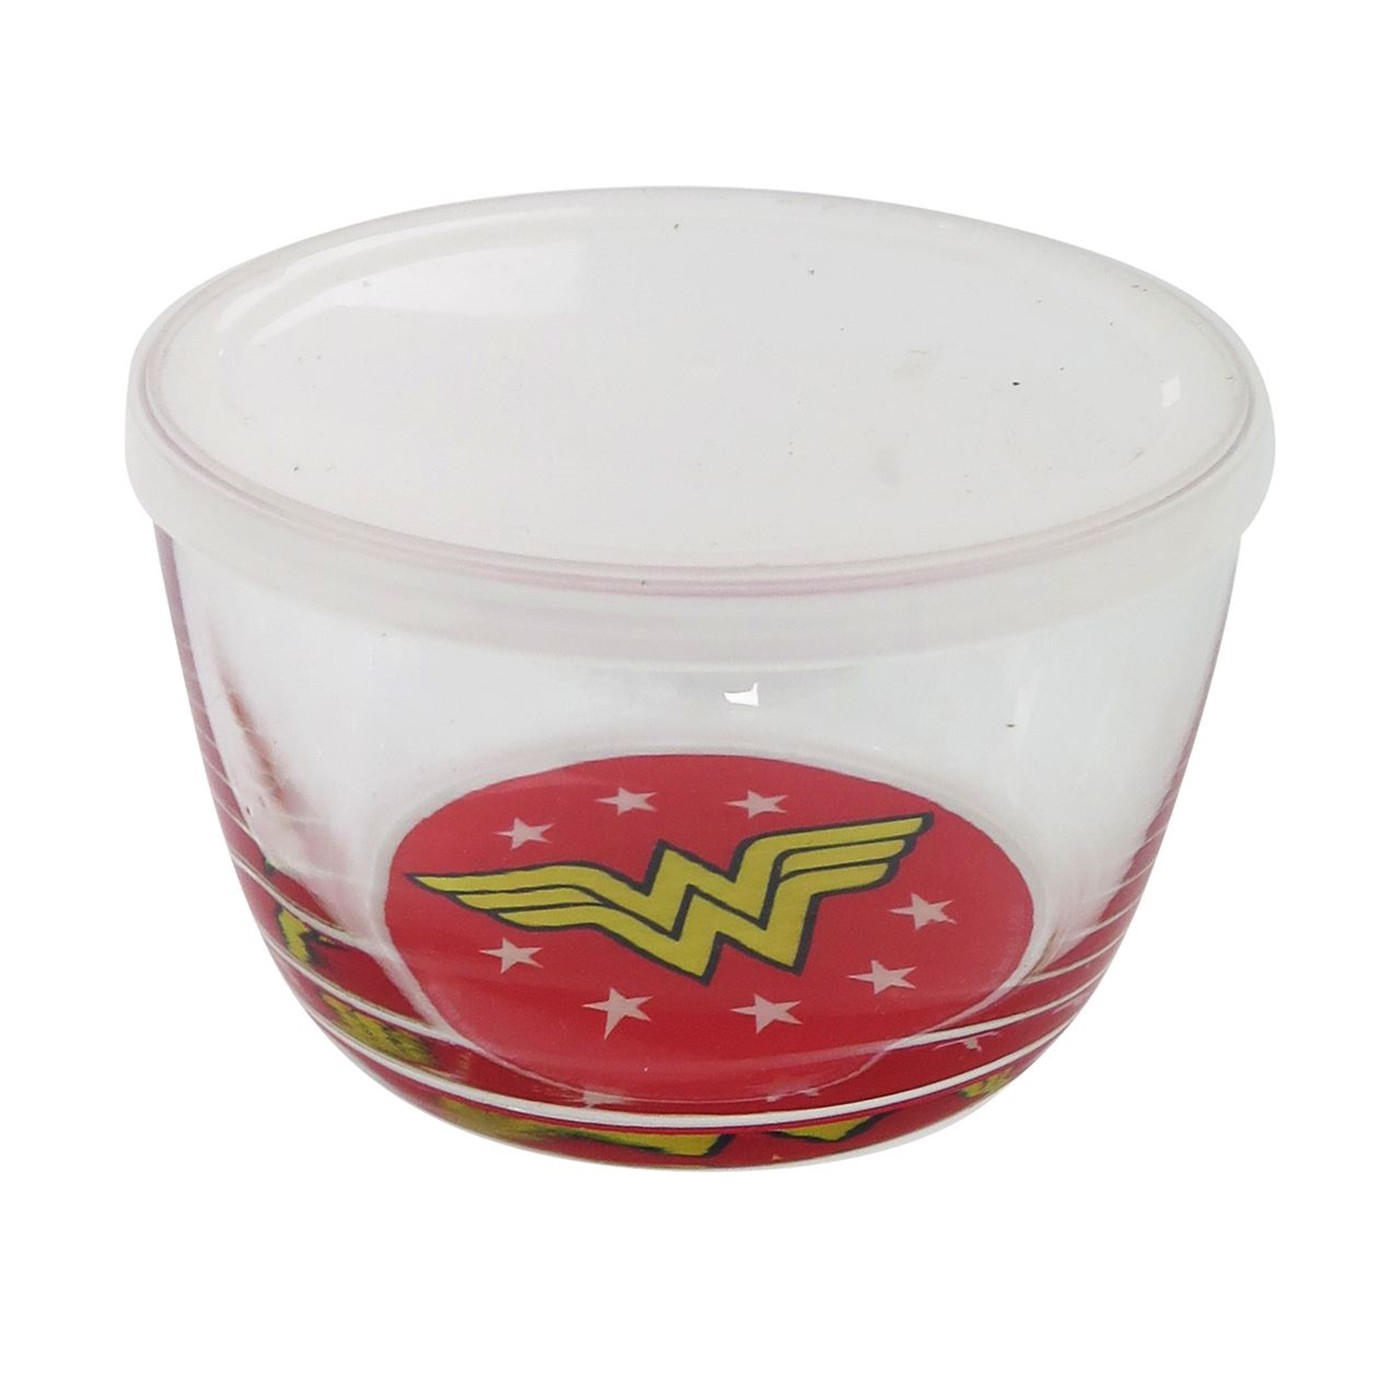 Wonder Woman 16oz Glass Storage Bowl with Lid